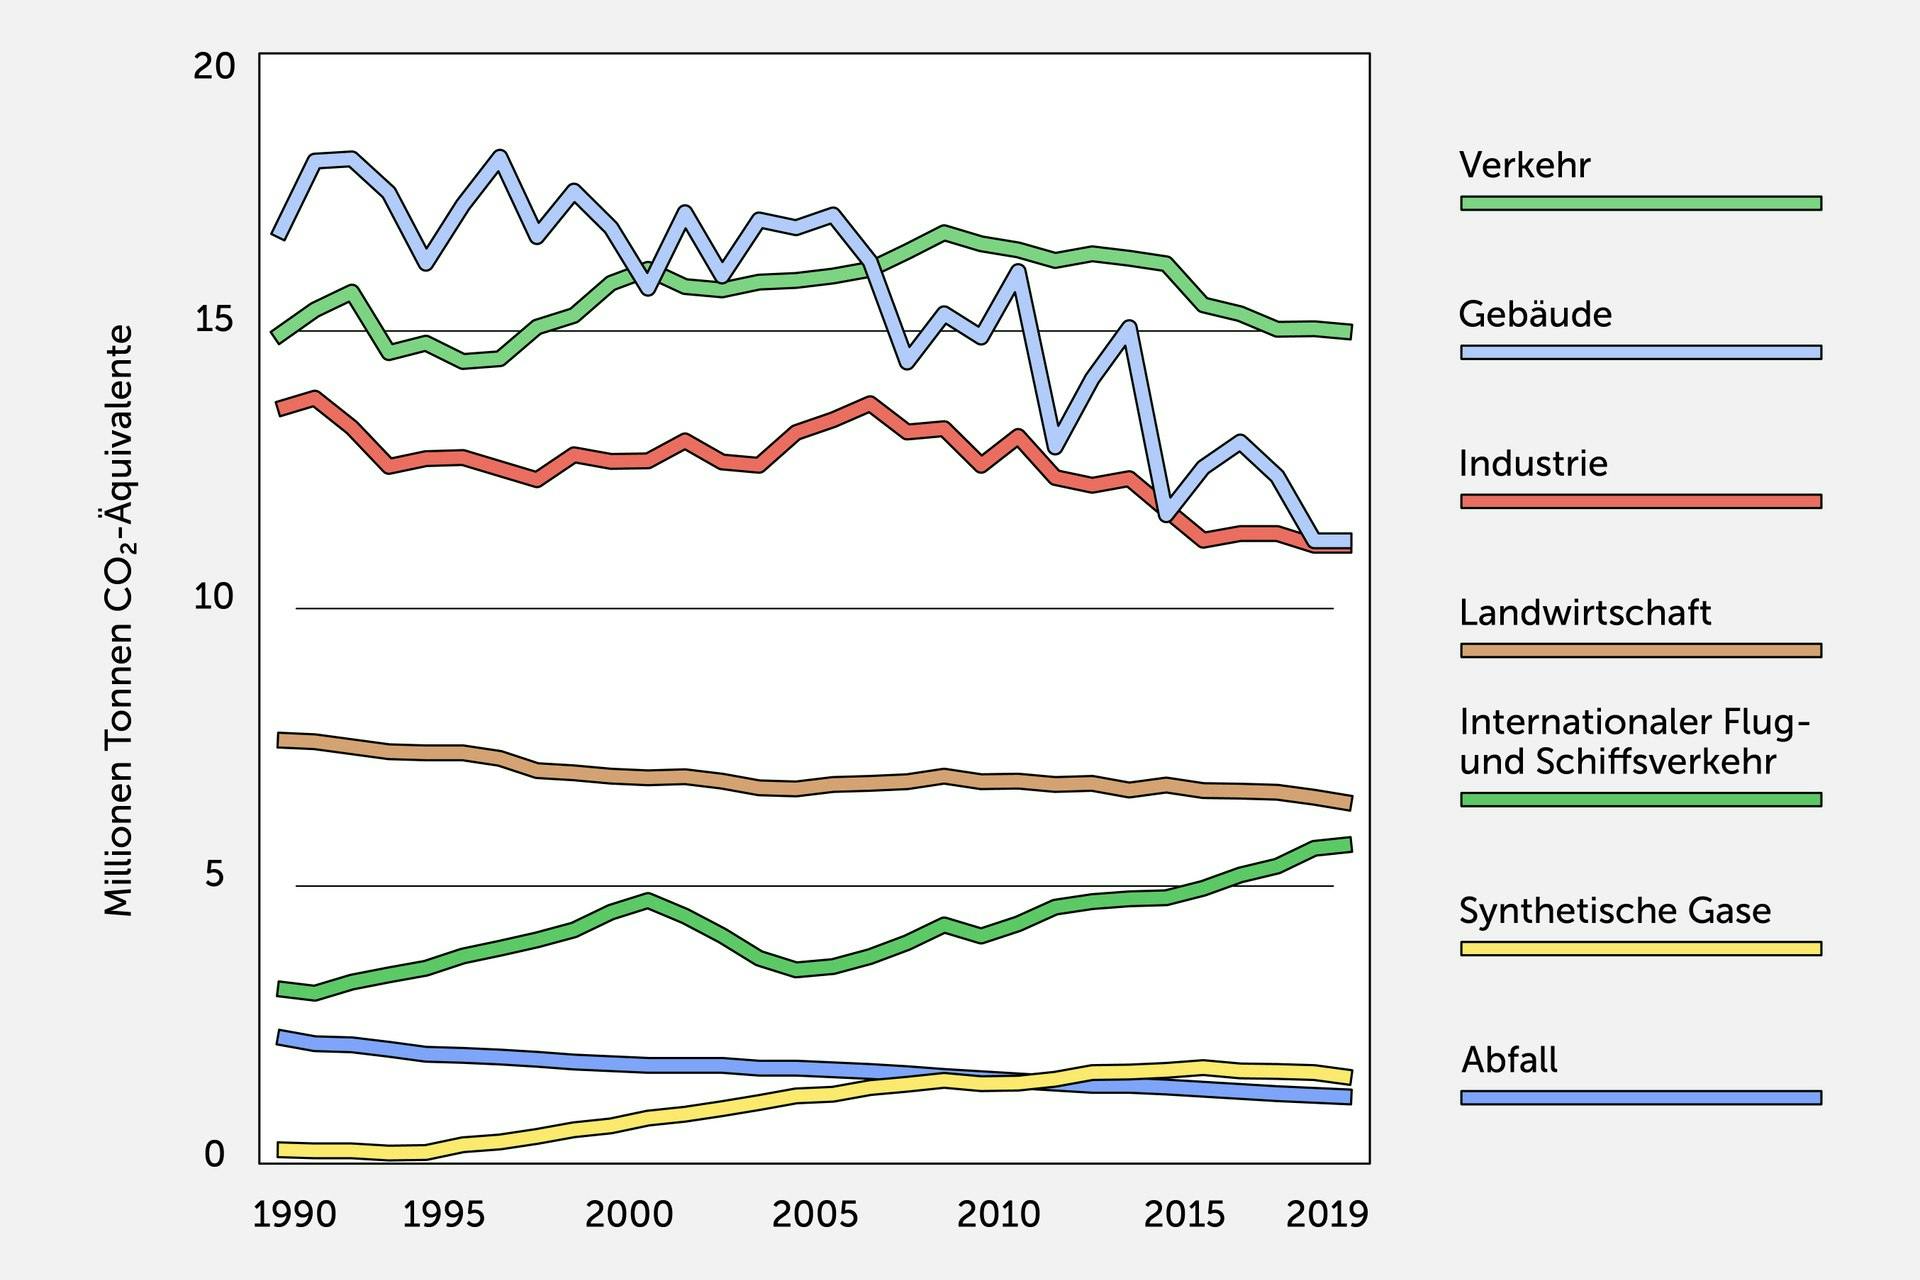 Diagramm, das zeigt, wie sich die Treibhausgas-Emissionen verschiedener Sektoren zwischen 1990 und 2019 verändert haben.